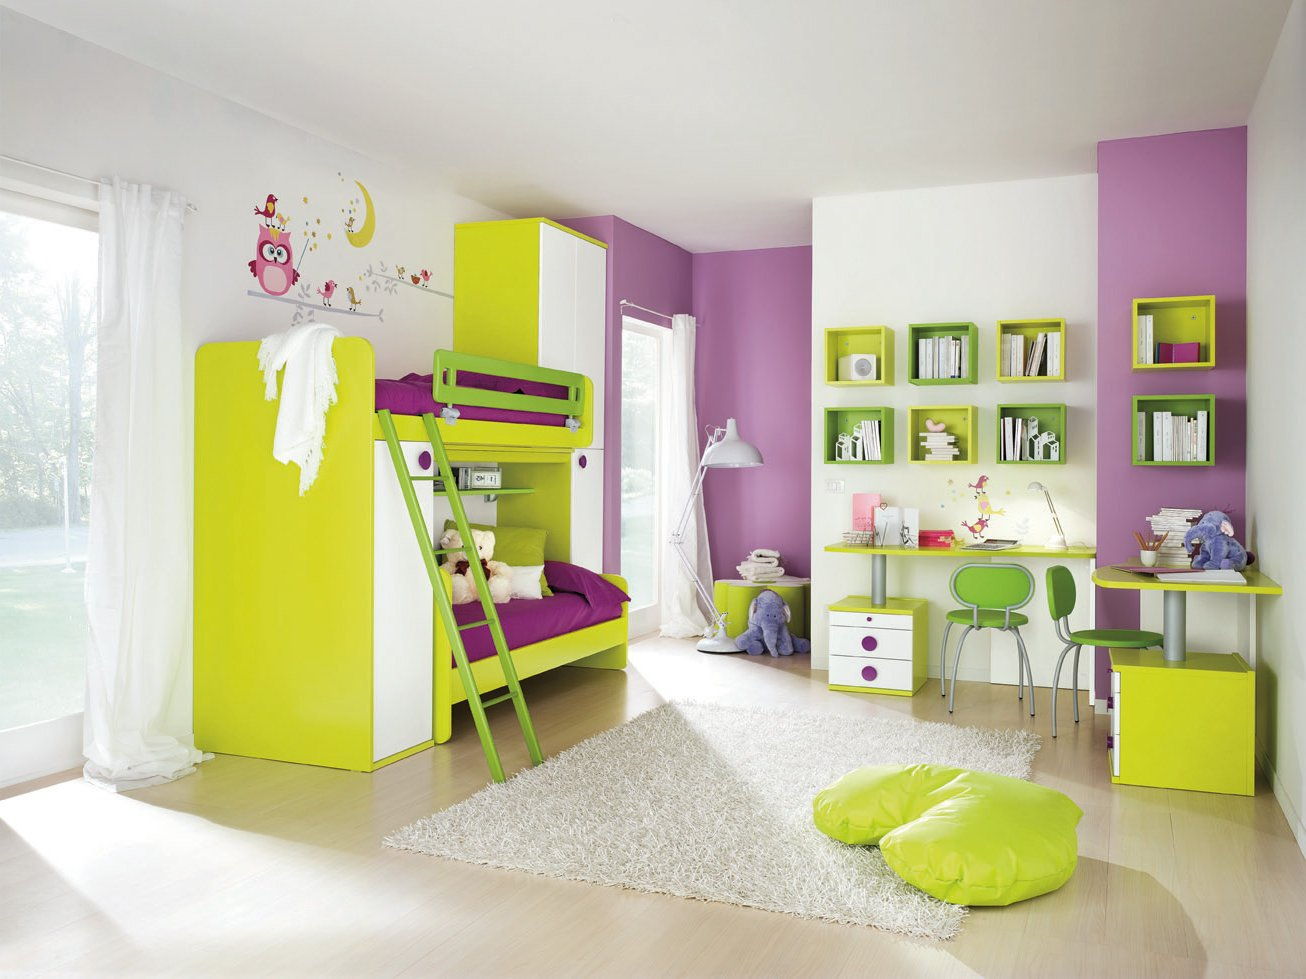 мебель разных цветов в комнате